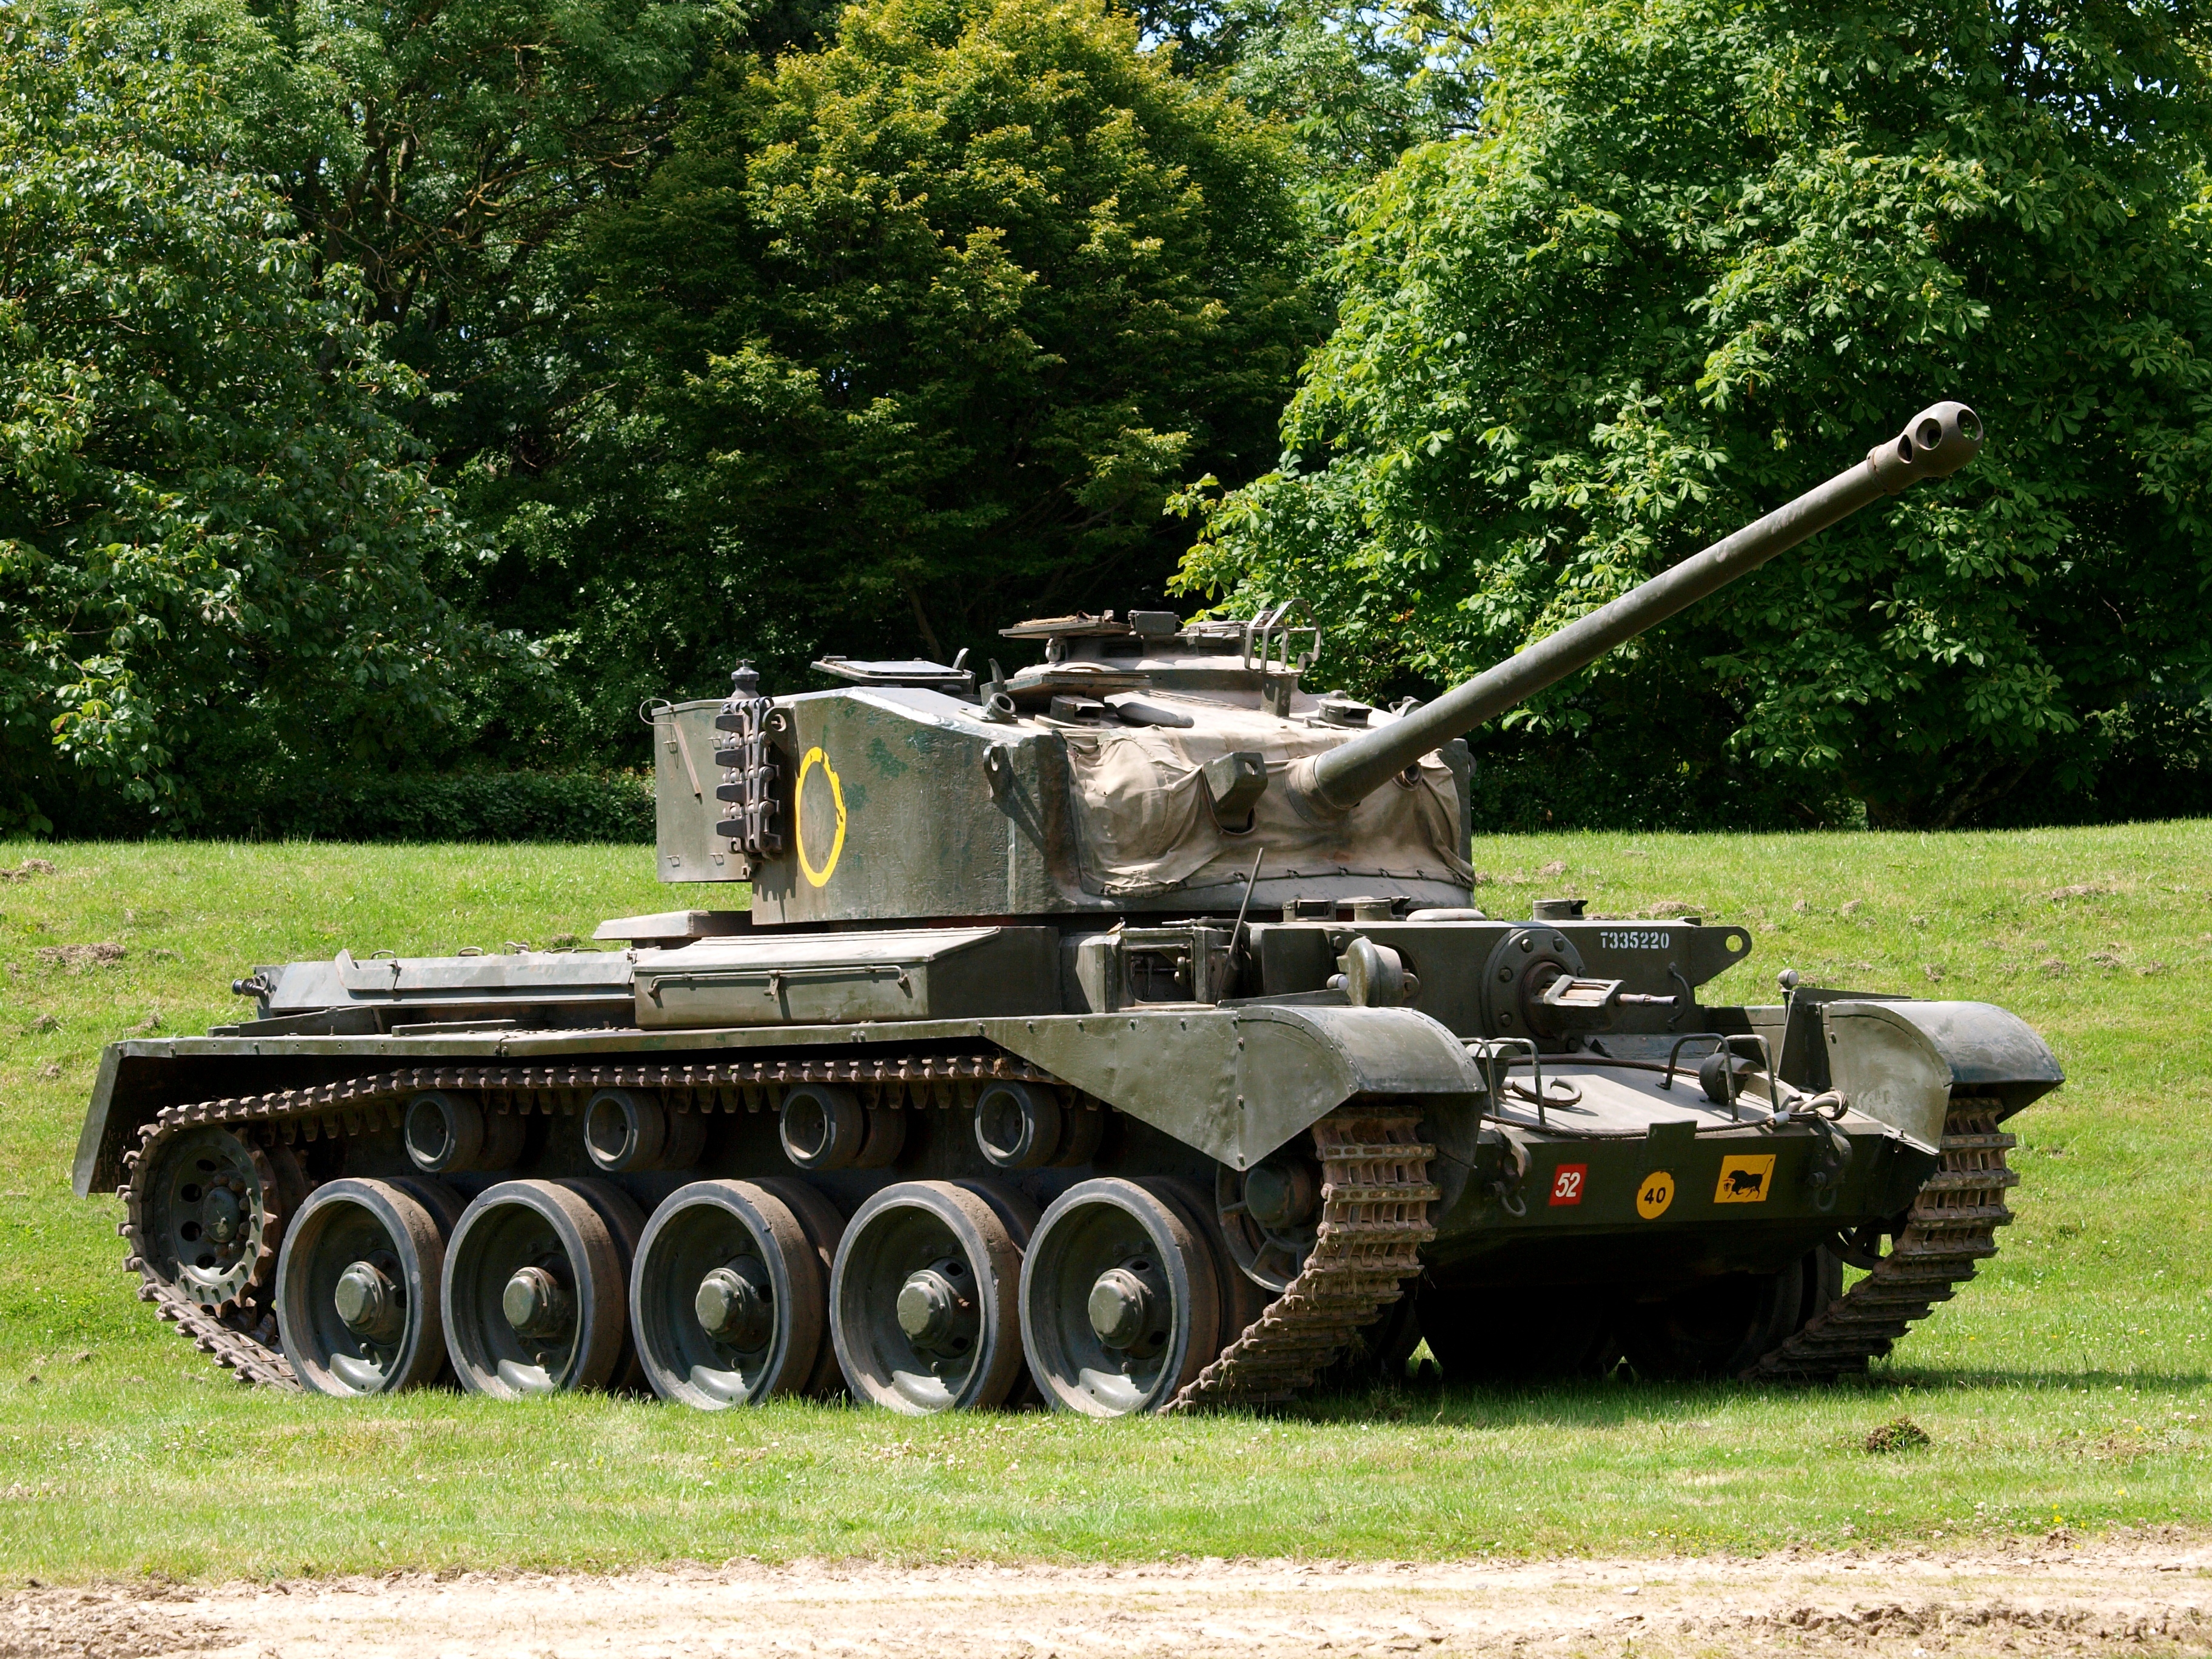 Название английского танка. A-34 Comet. Крейсерский танк a34 «Комета». Британский танк Comet. А-34 Комета танк.